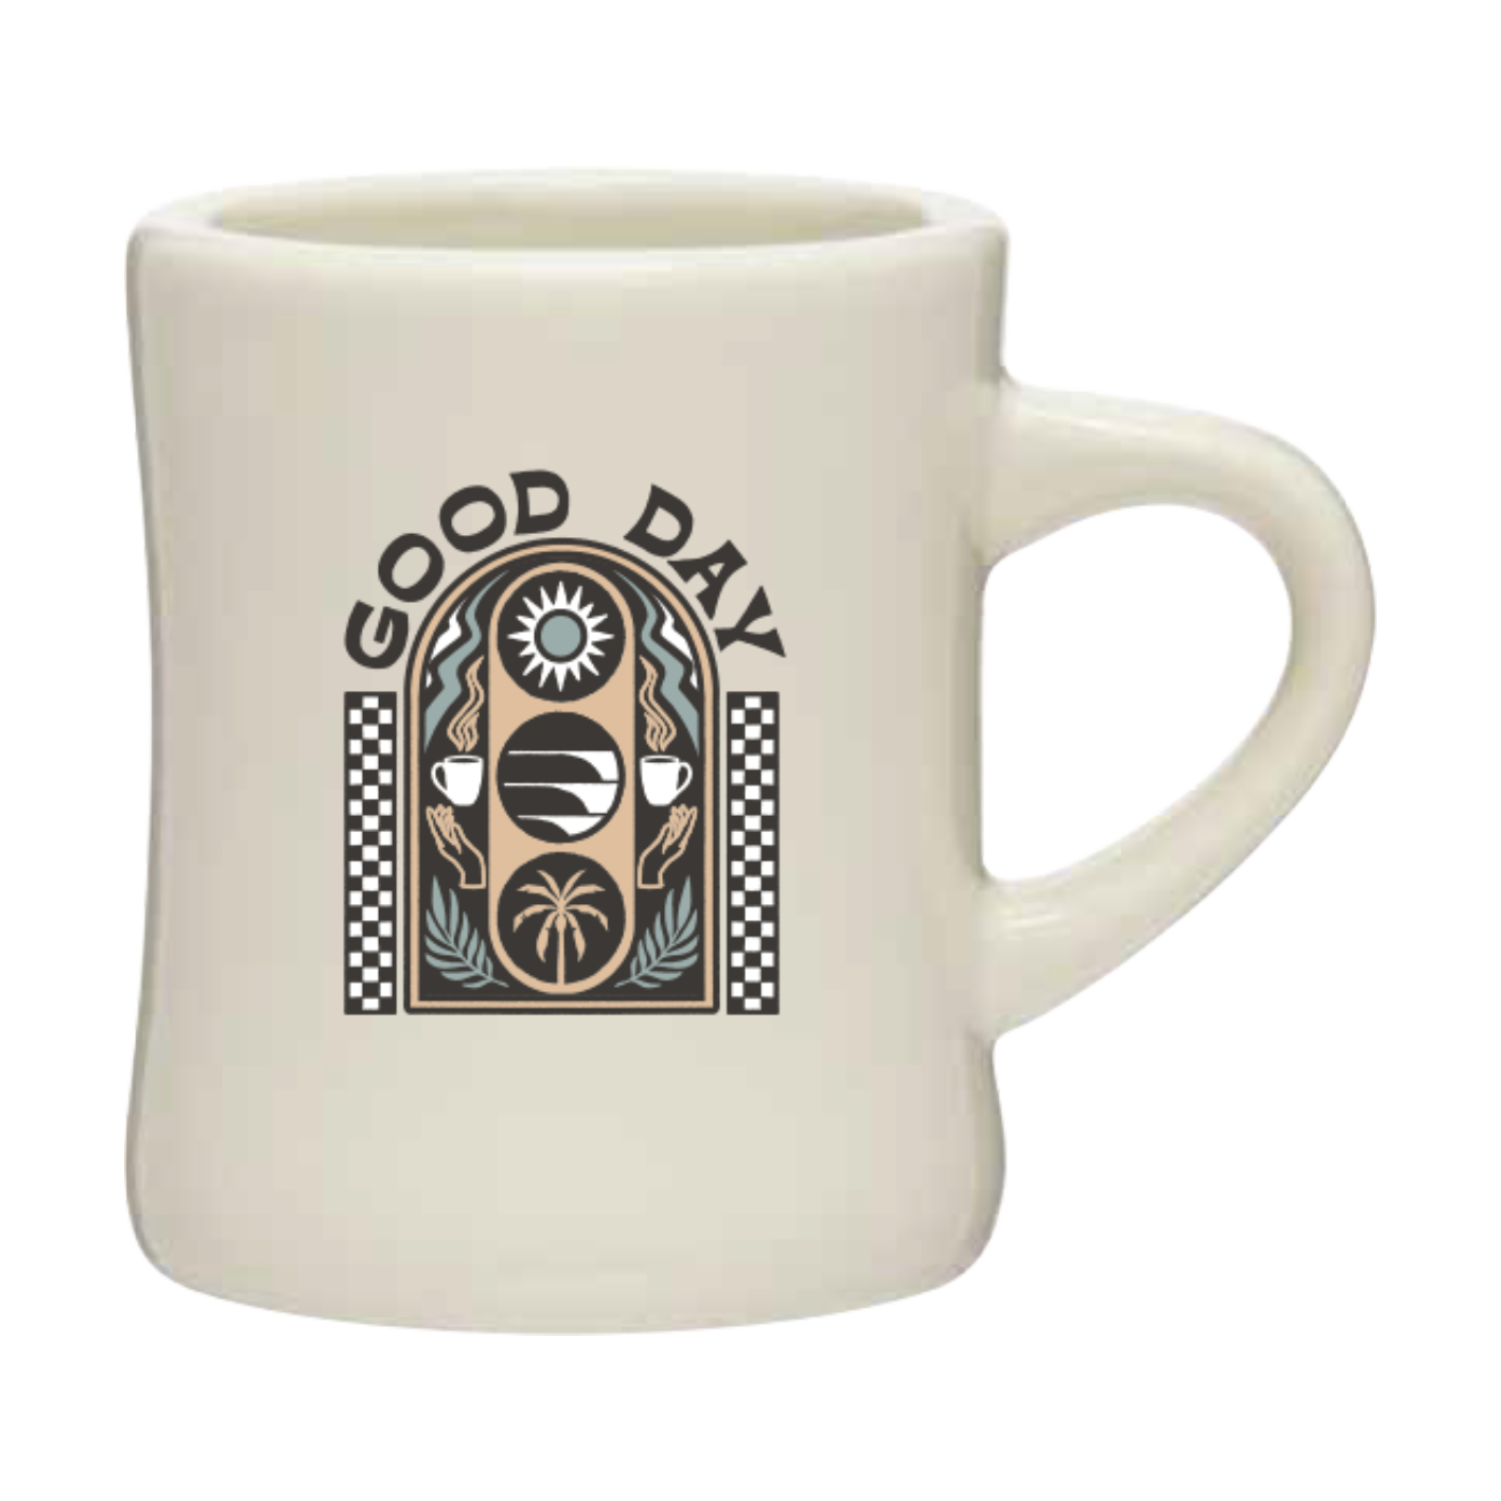 Good Day Coffee Mug